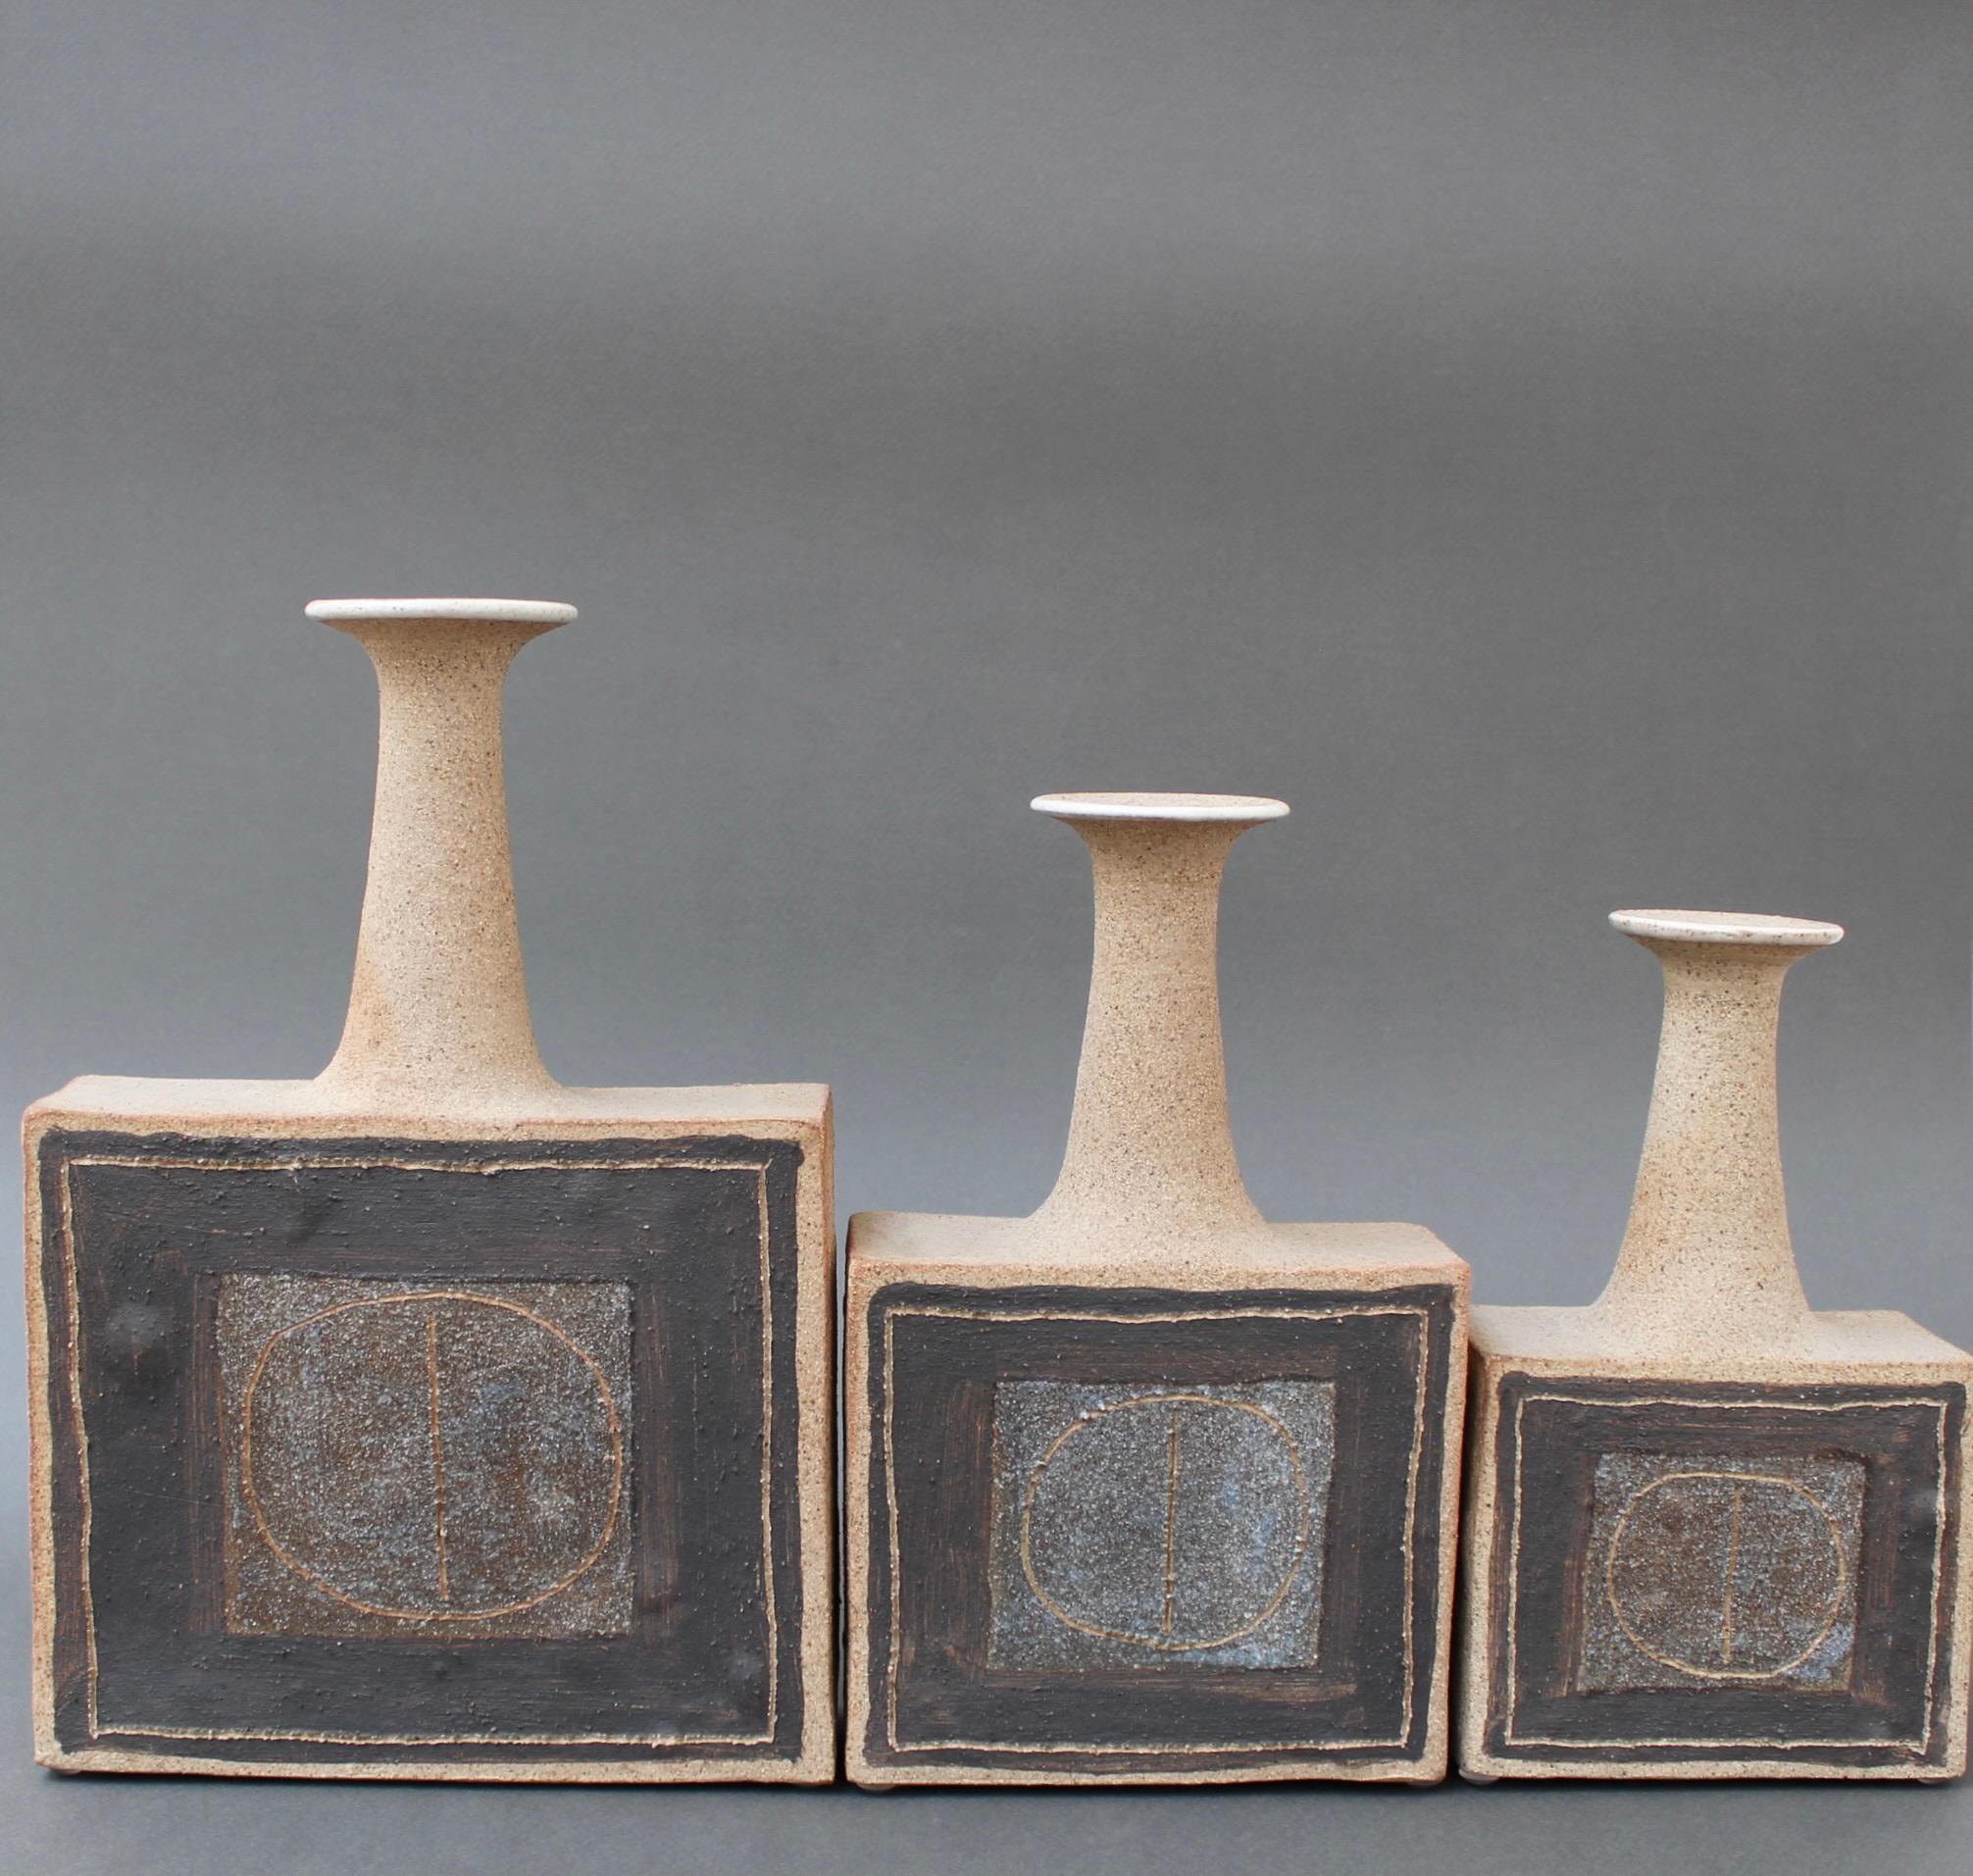 Ein Trio flaschenförmiger Vasen des italienischen Keramikers Bruno Gambone (ca. 1990). Diese elegant geformten Blumenvasen mit schmalen Öffnungen sind zu Kunstwerken erhobene Steingutgefäße. Es handelt sich um moderne quadratische Sockel mit